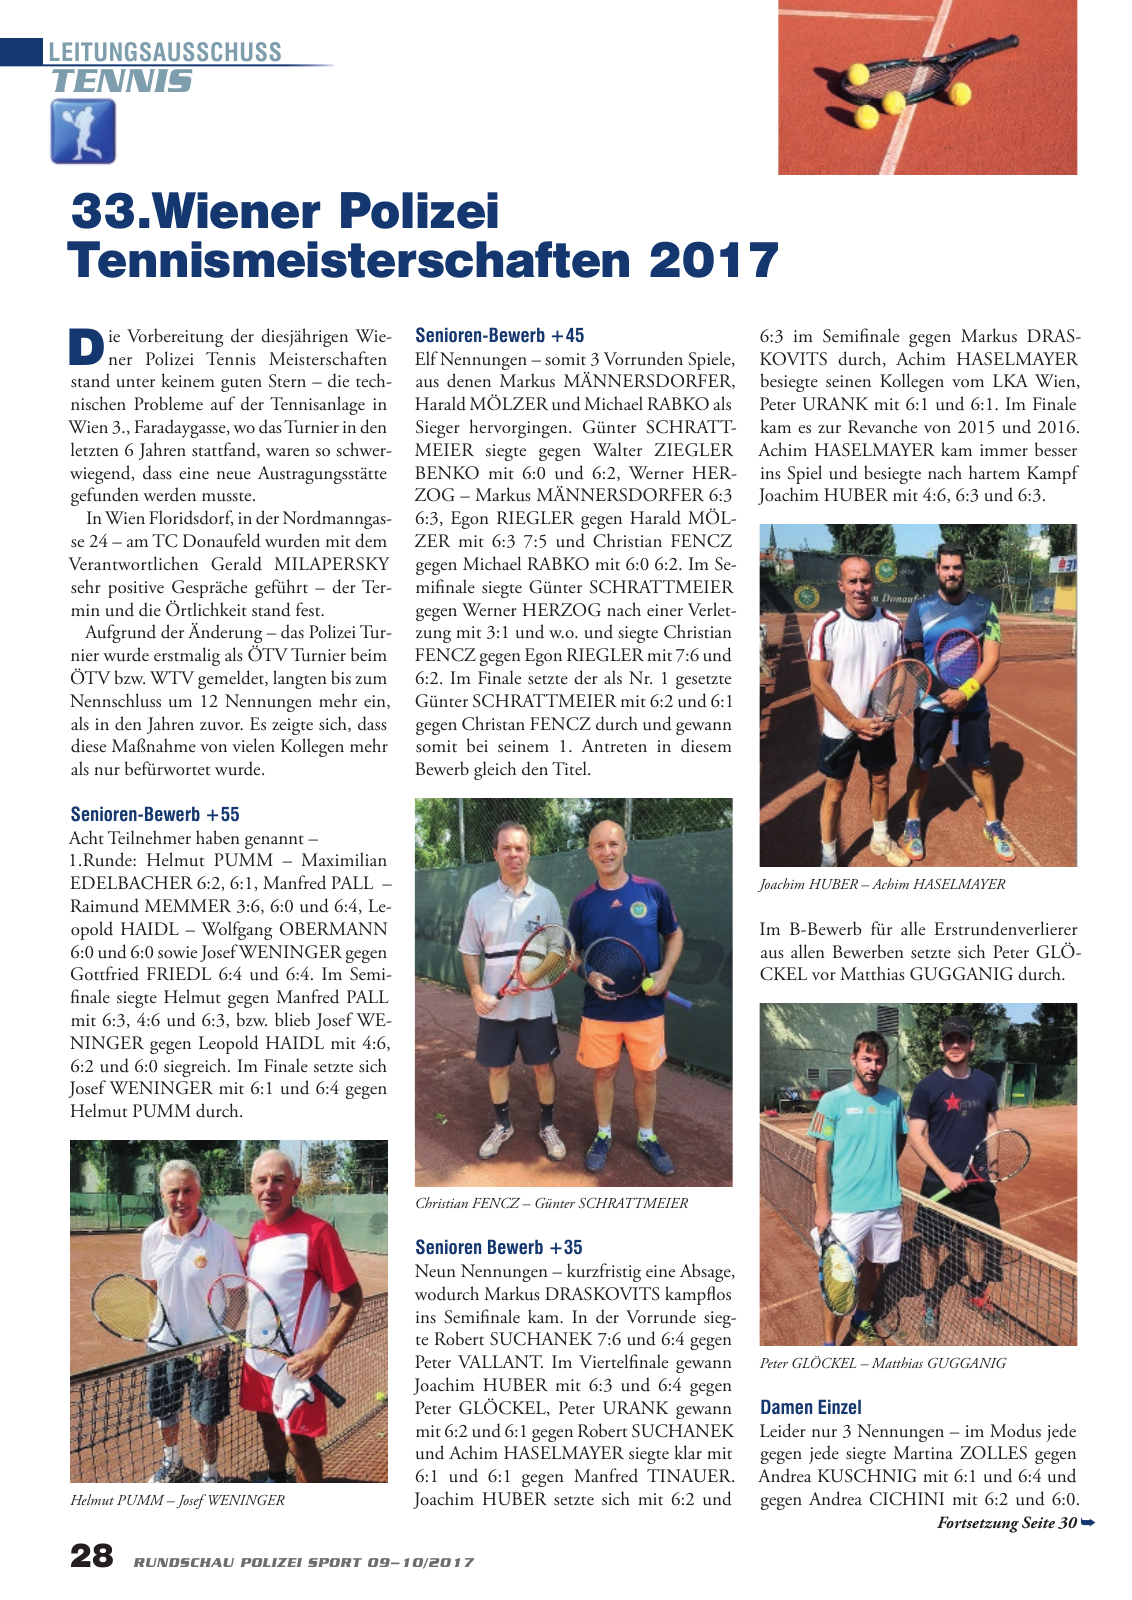 Vorschau Rundschau Polizei Sport 09-10/2017 Seite 28